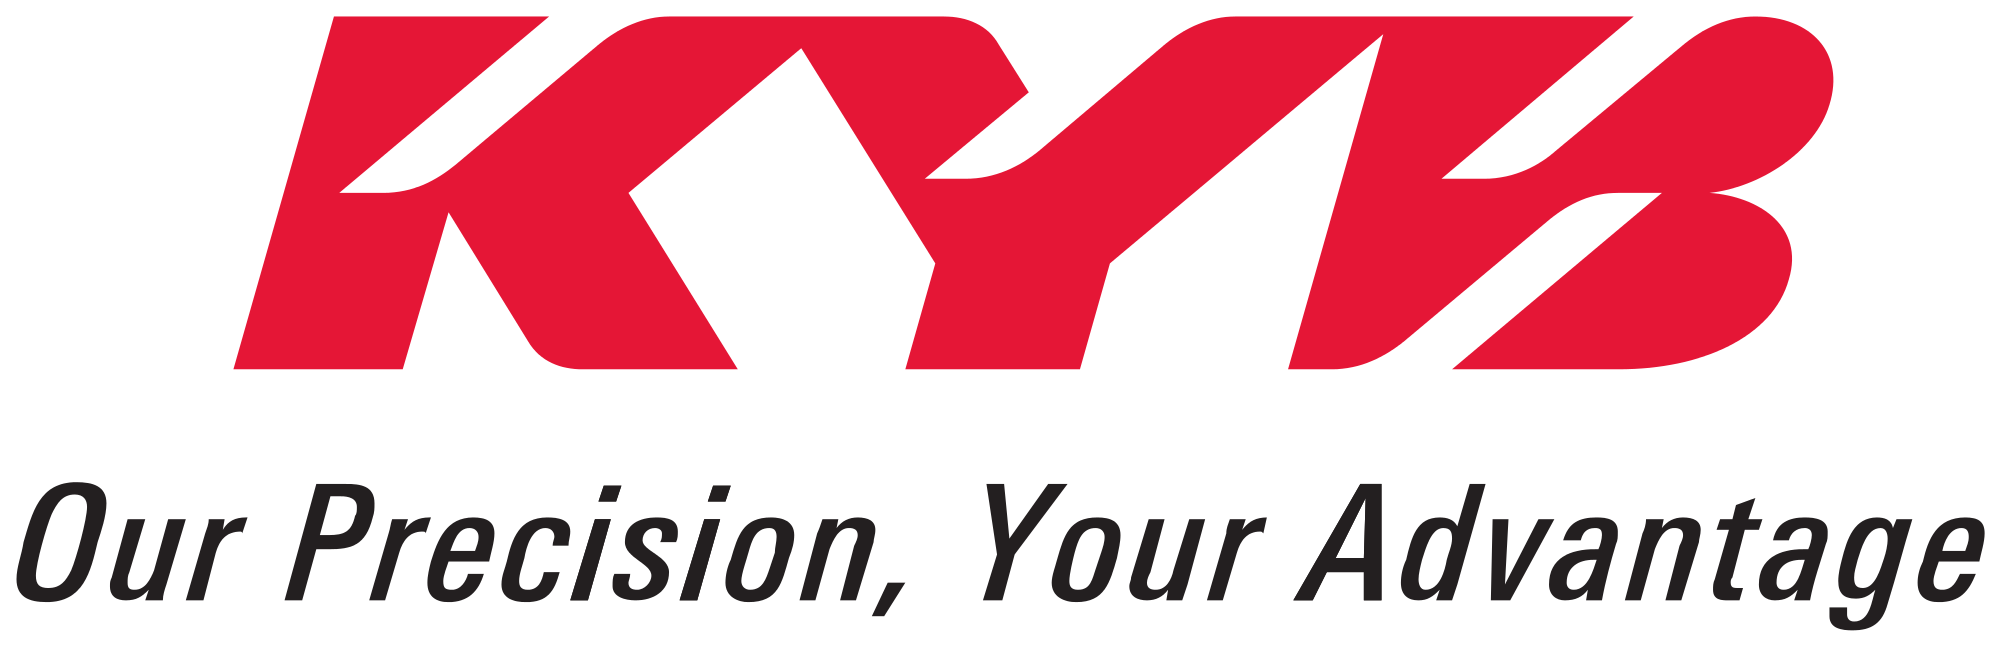 Kayaba Logo